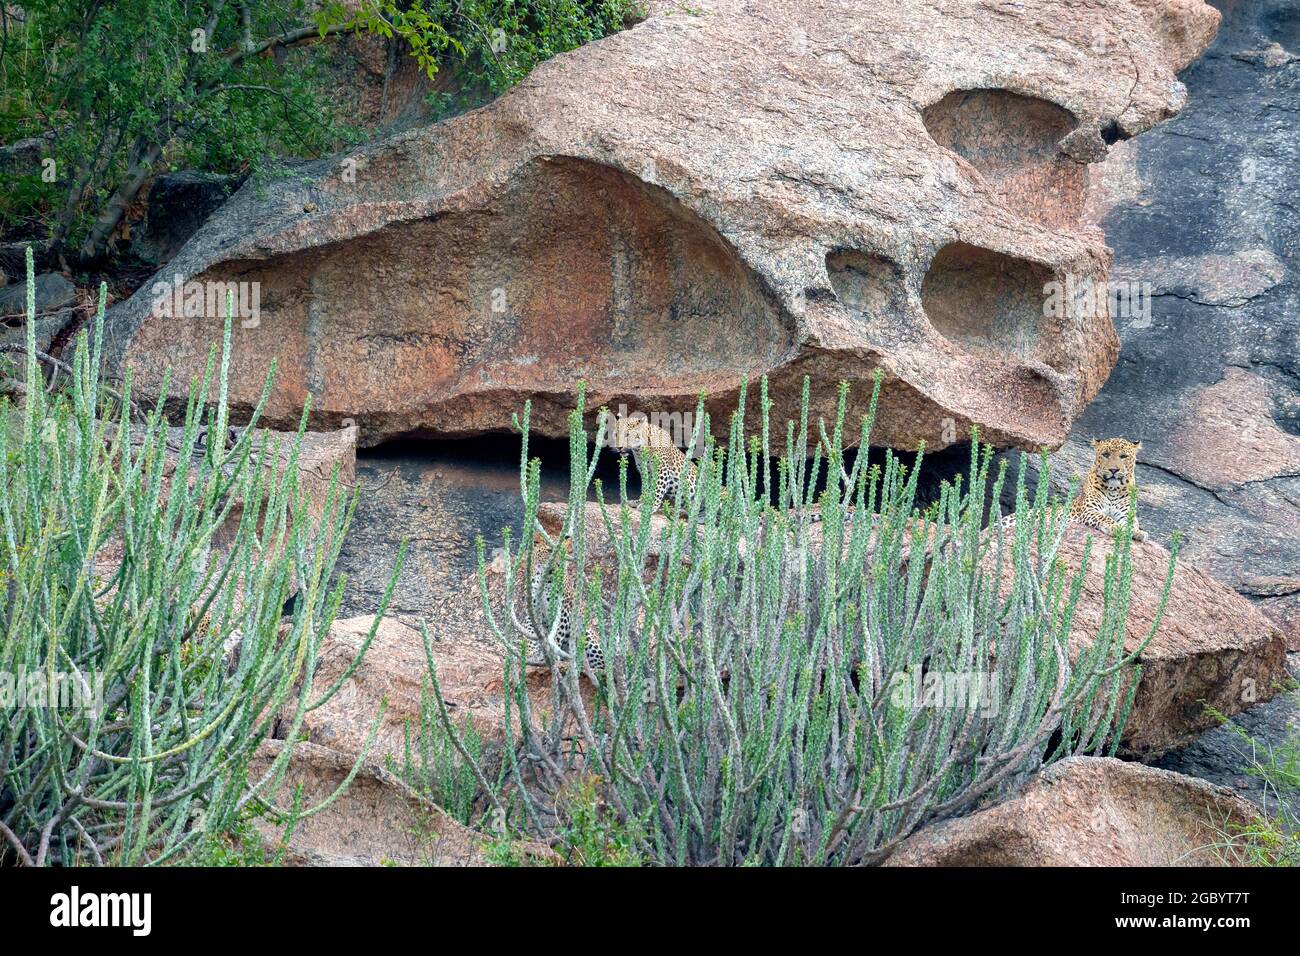 Diverses images de léopard/s, uniques aussi bien que de famille dans leur habitat naturel à Jawai, Rajasthan, Inde sur une colline faite de roches Banque D'Images